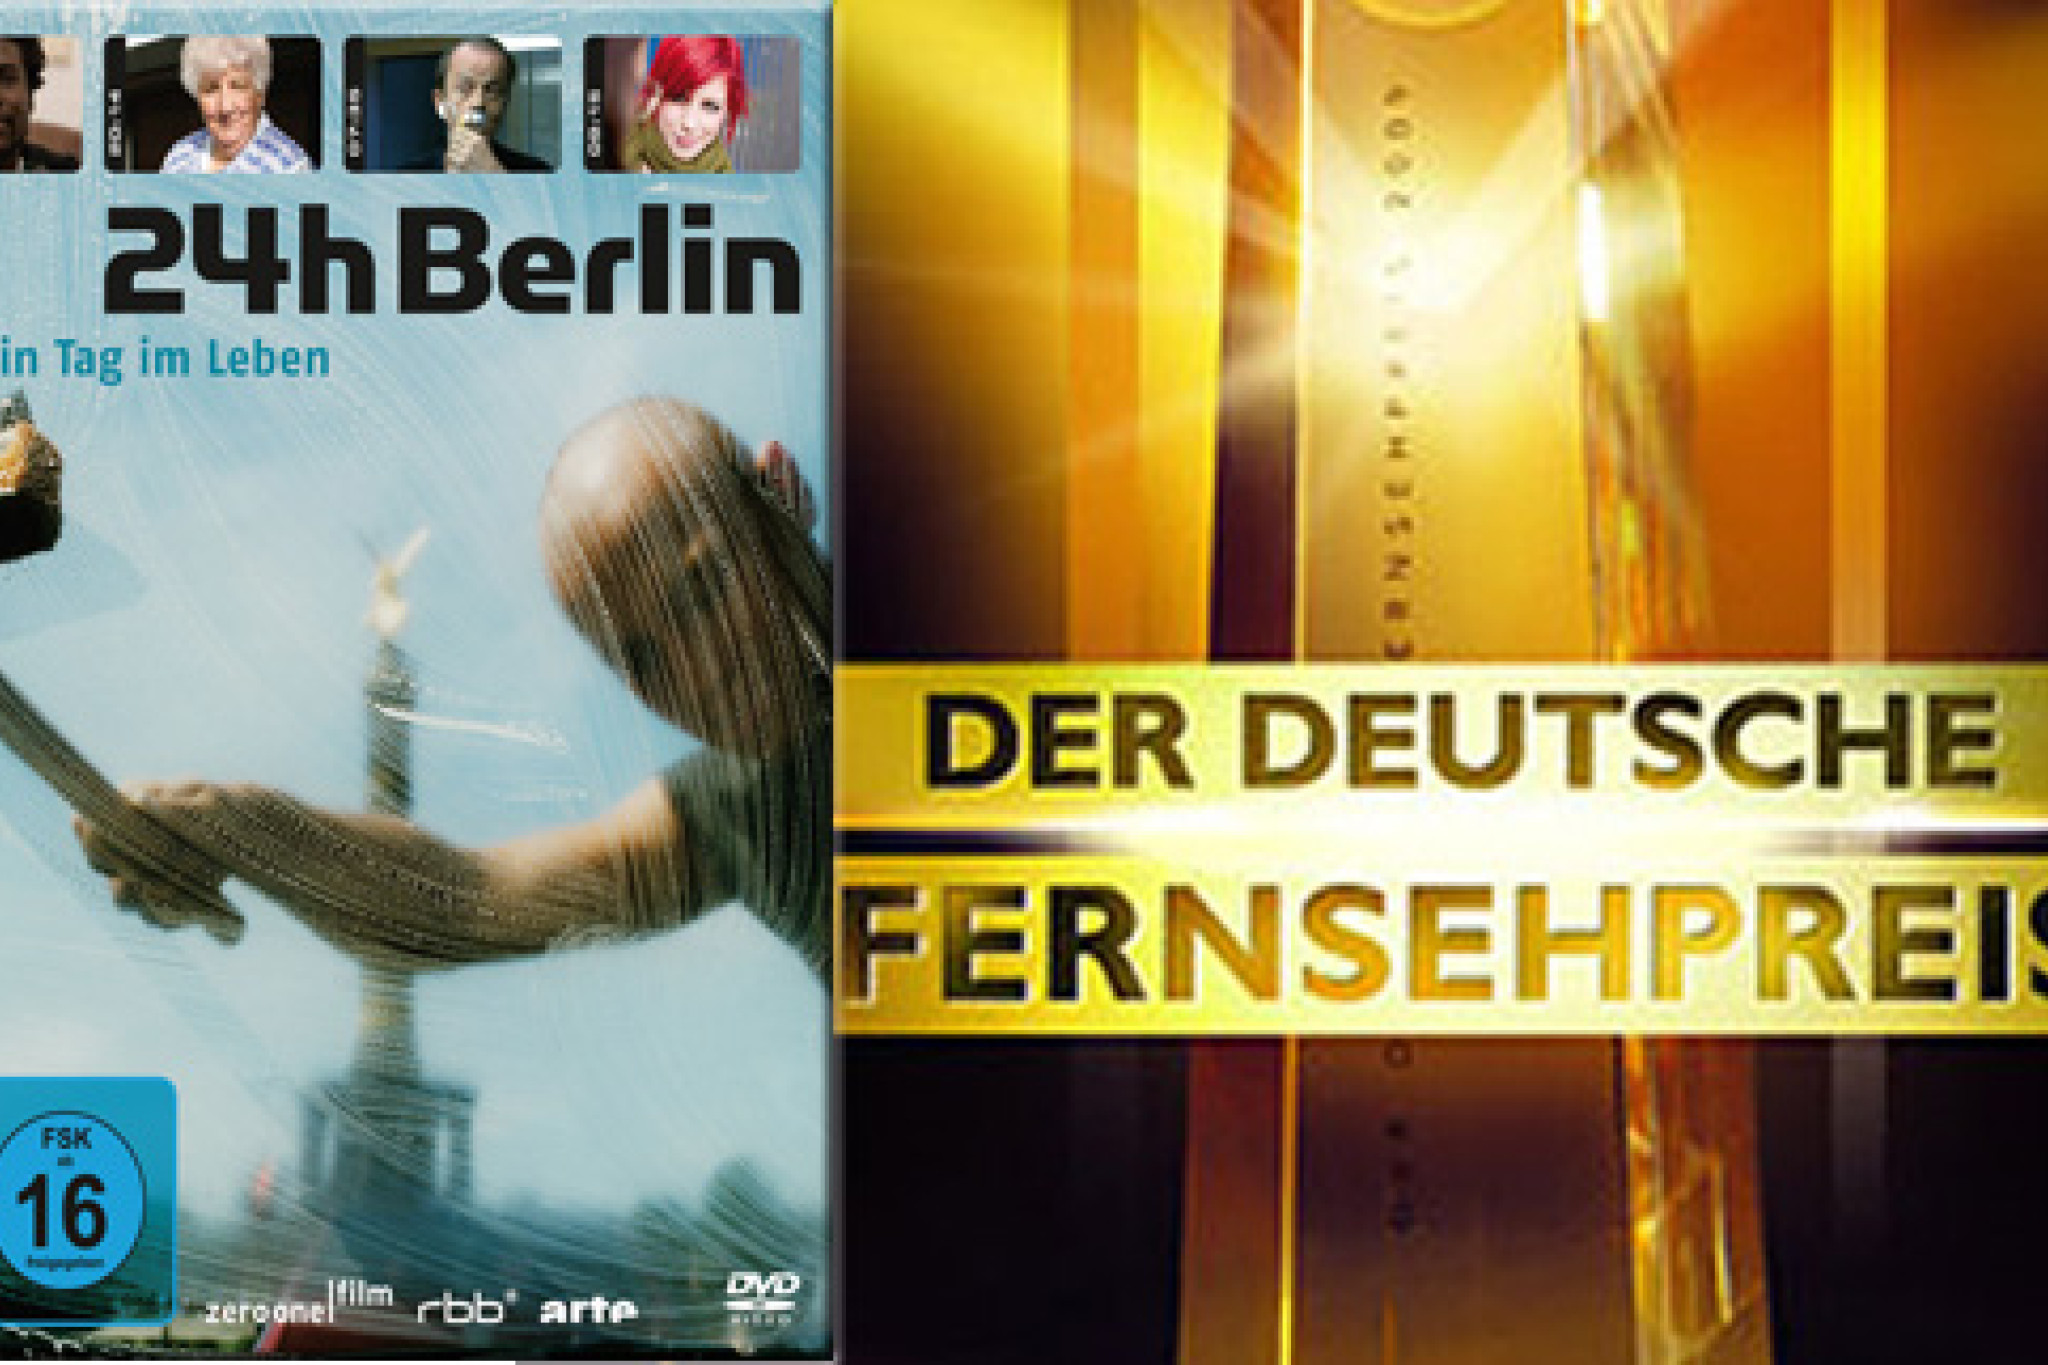 Deutscher Fernsehpreis für "24h Berlin - Ein Tag im Leben"